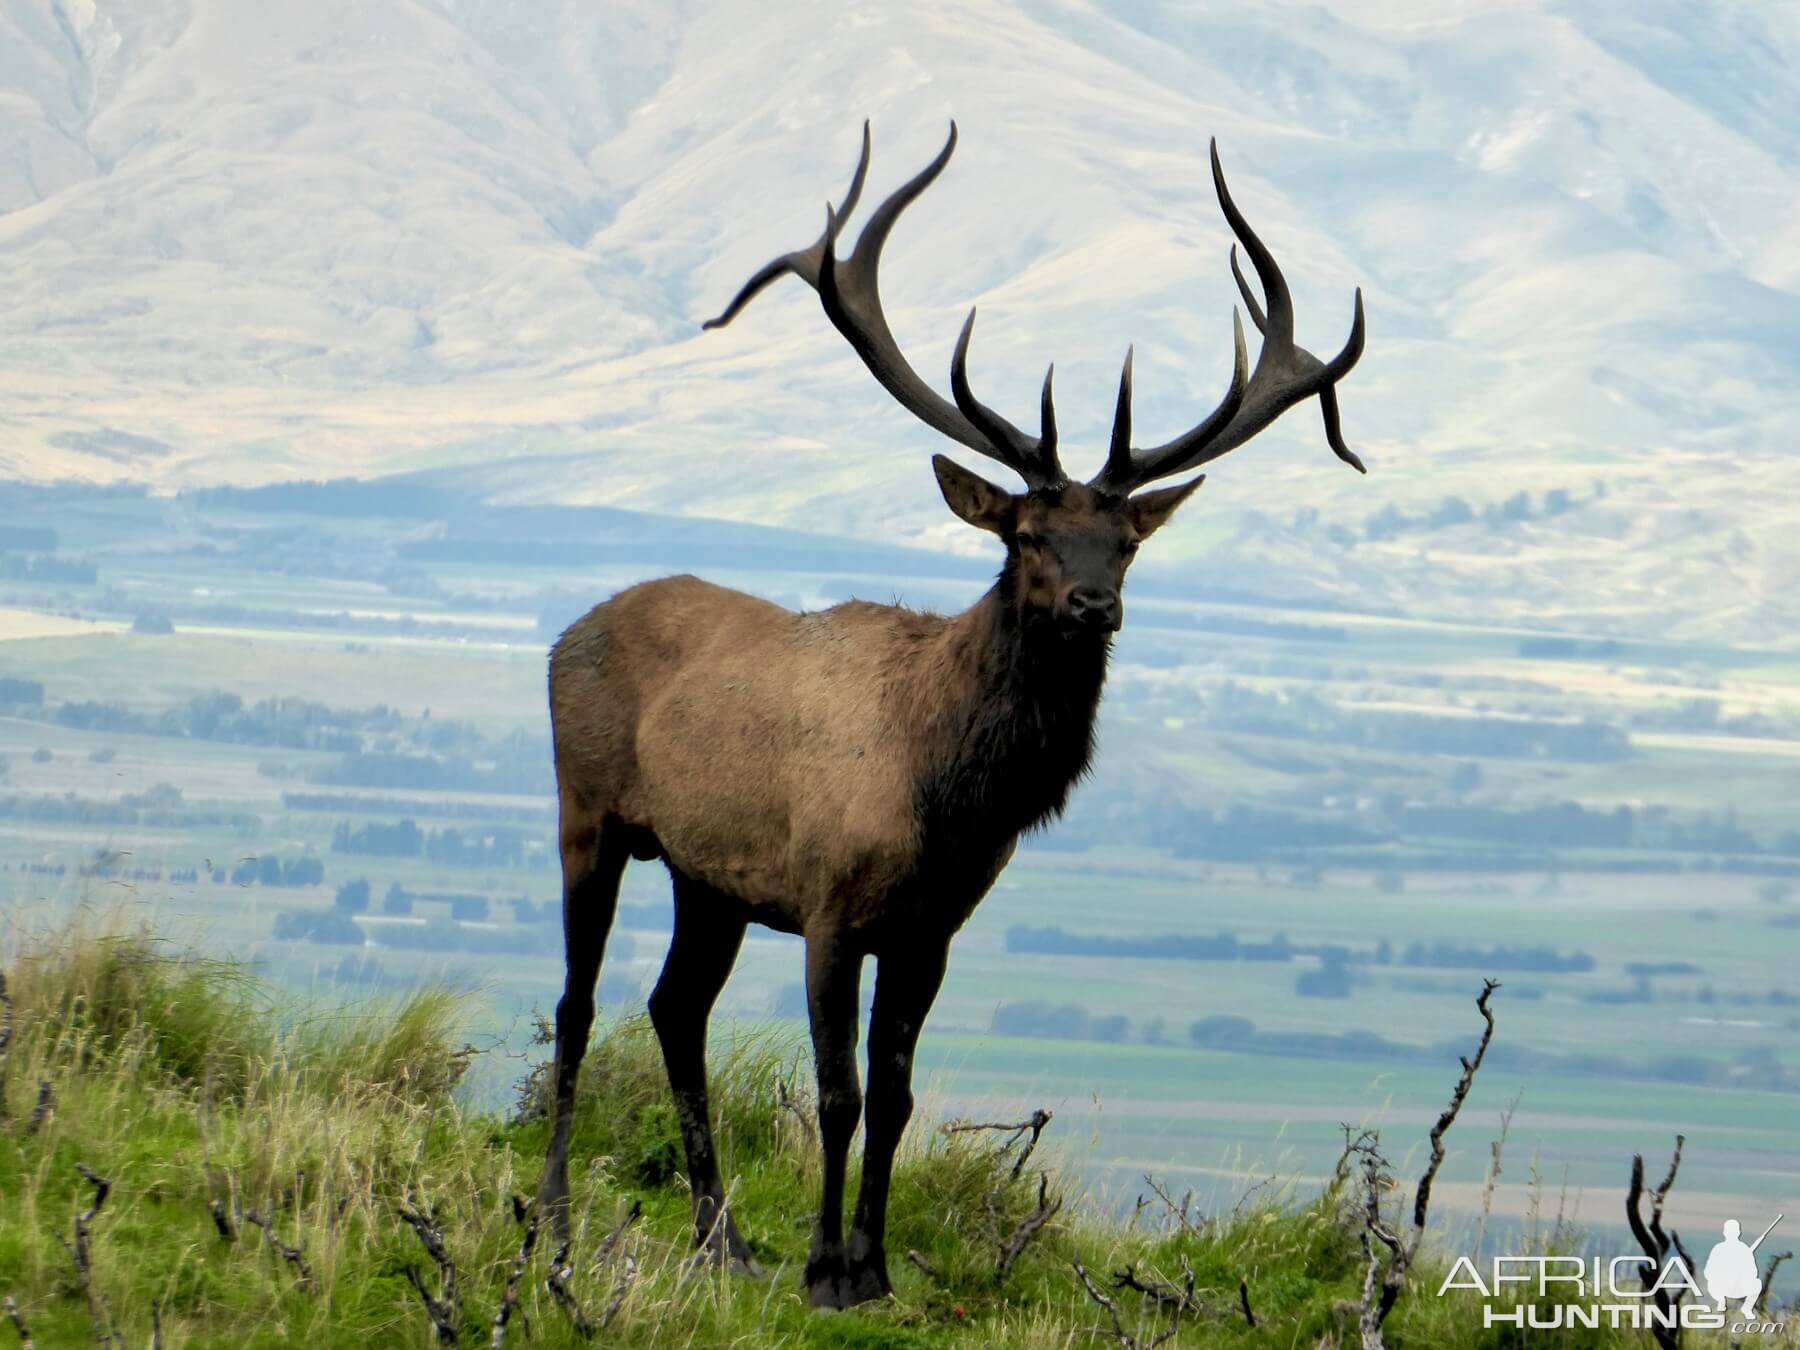 New Zealand Elk (Wapiti)